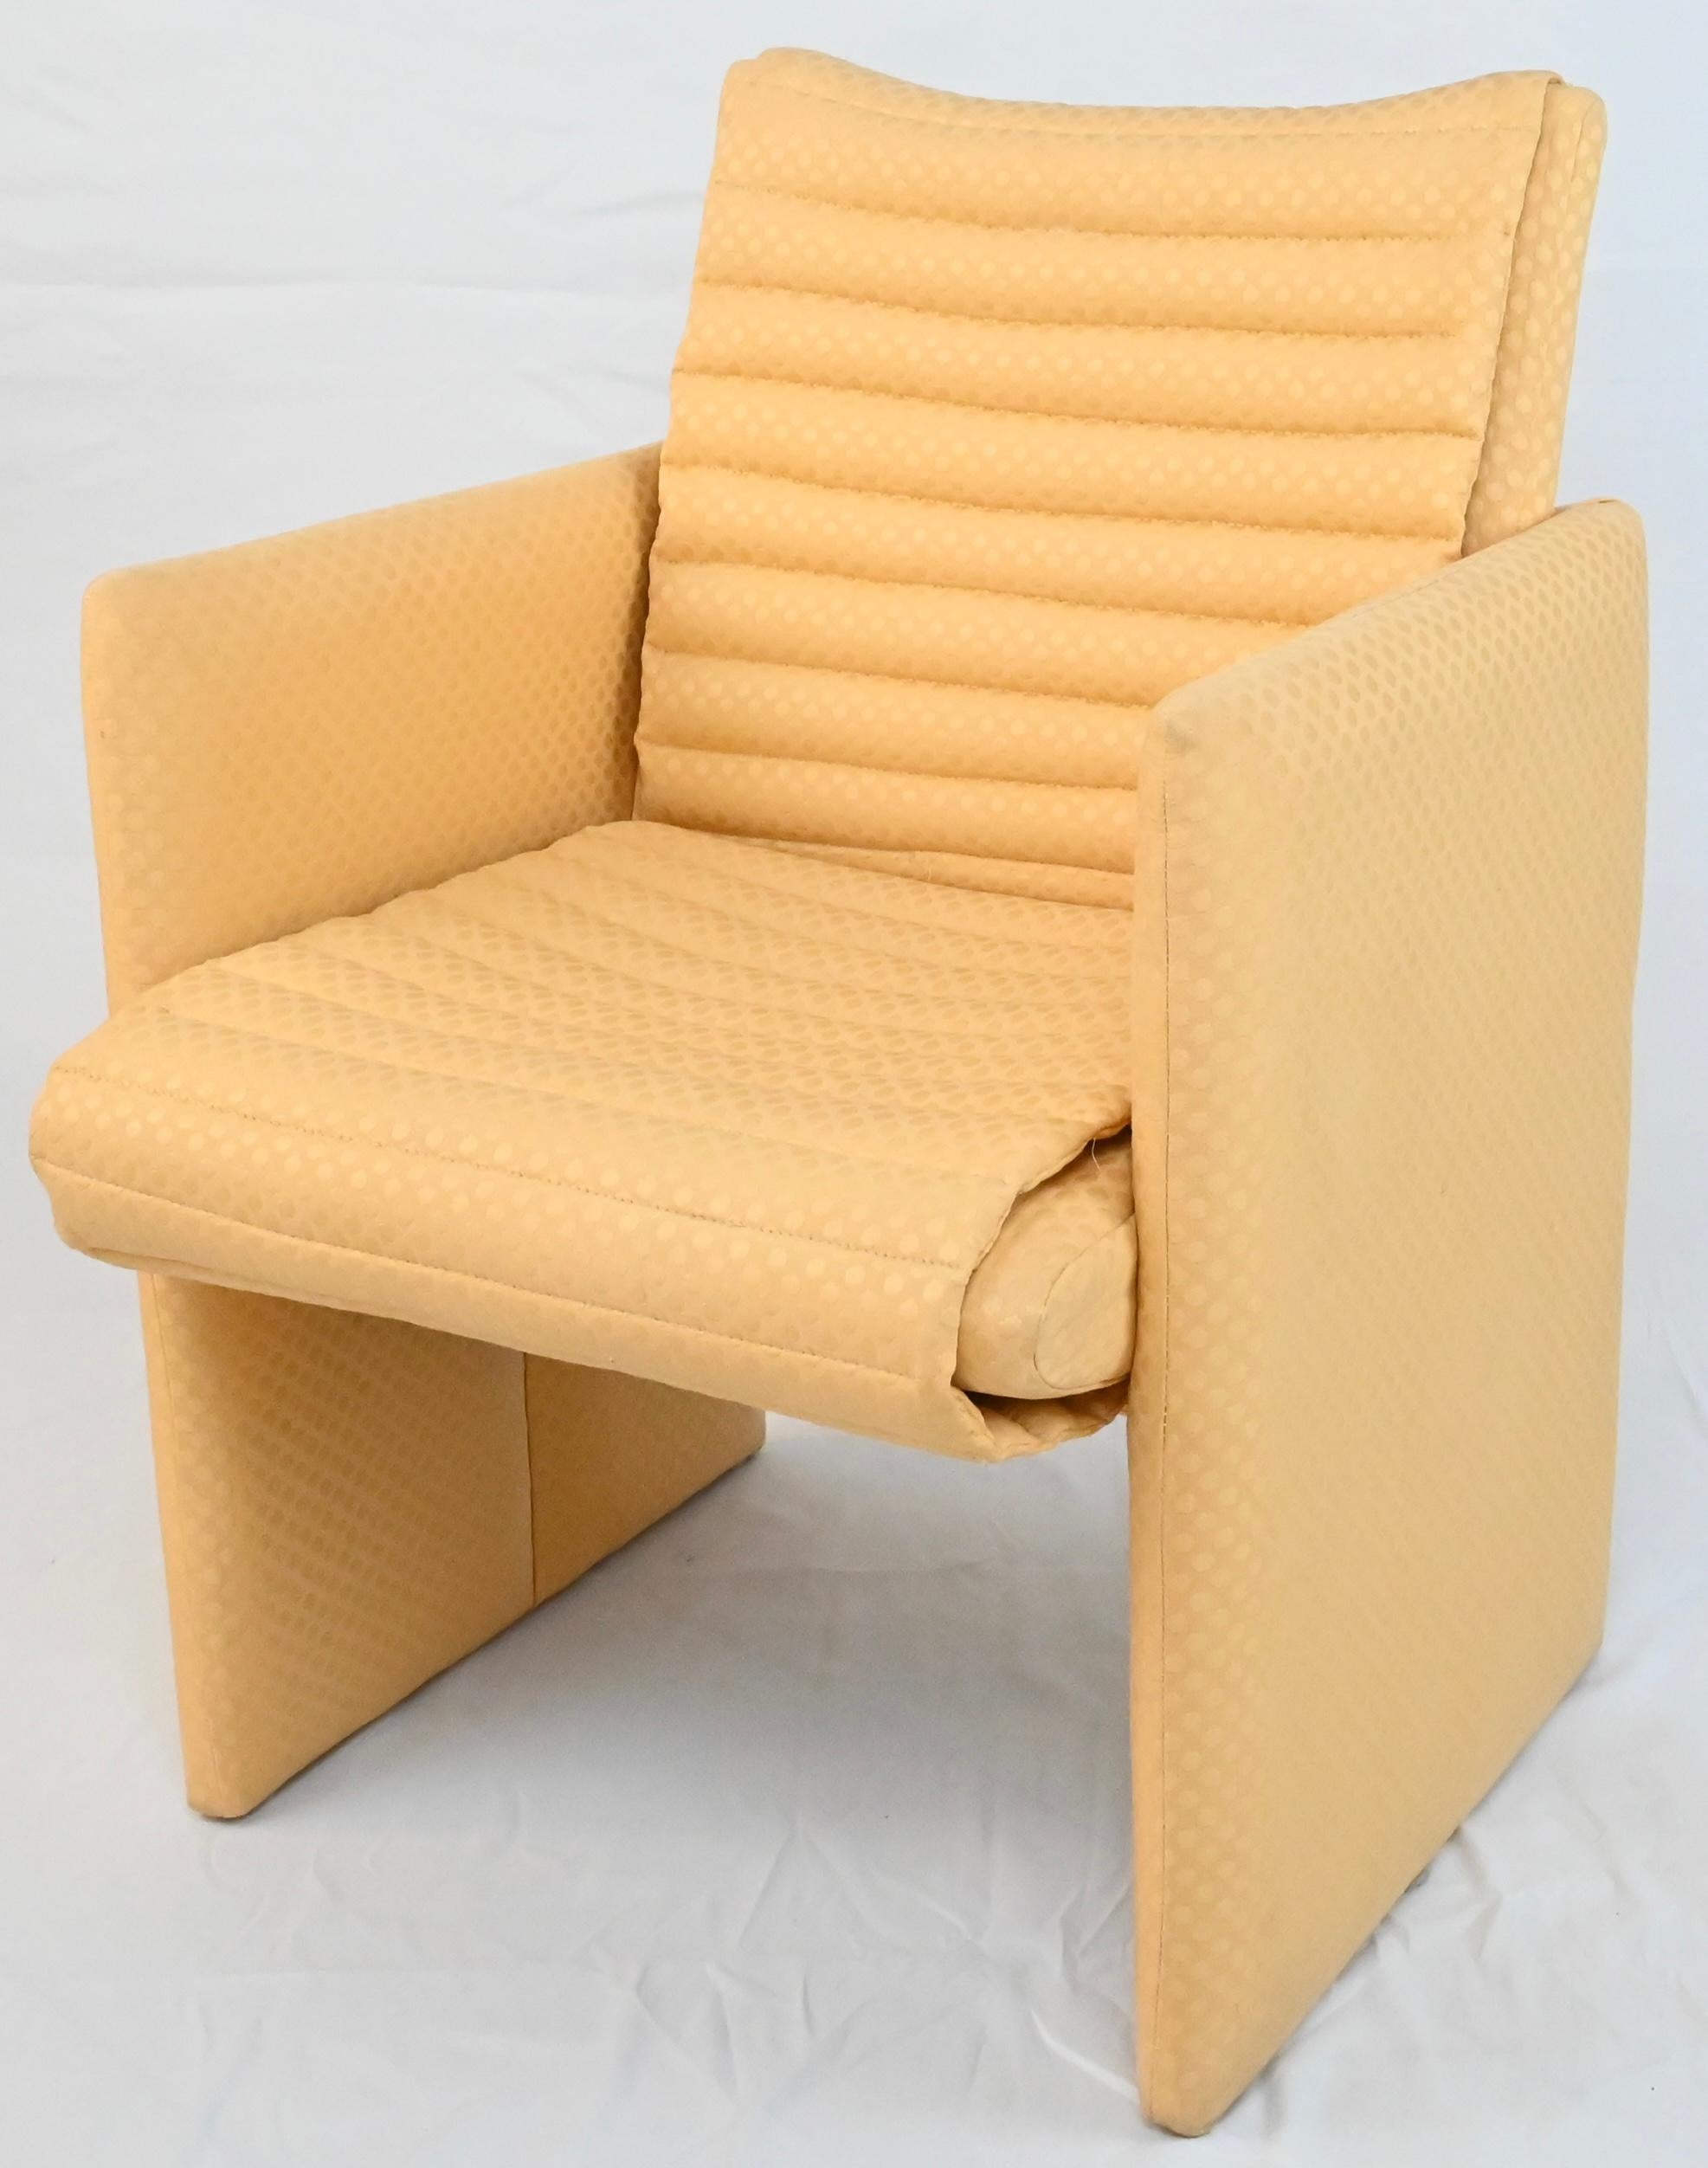 Ein feines und seltenes Set von 4 gepolsterten Sesseln mit gesteppten Rinnen, die mit einem hellgelben Stoff von sehr guter Qualität getuftet sind. Die wahre Farbe des Stoffes ist auf den letzten 2 Bildern zu sehen. Die Beleuchtung des Fotos hat